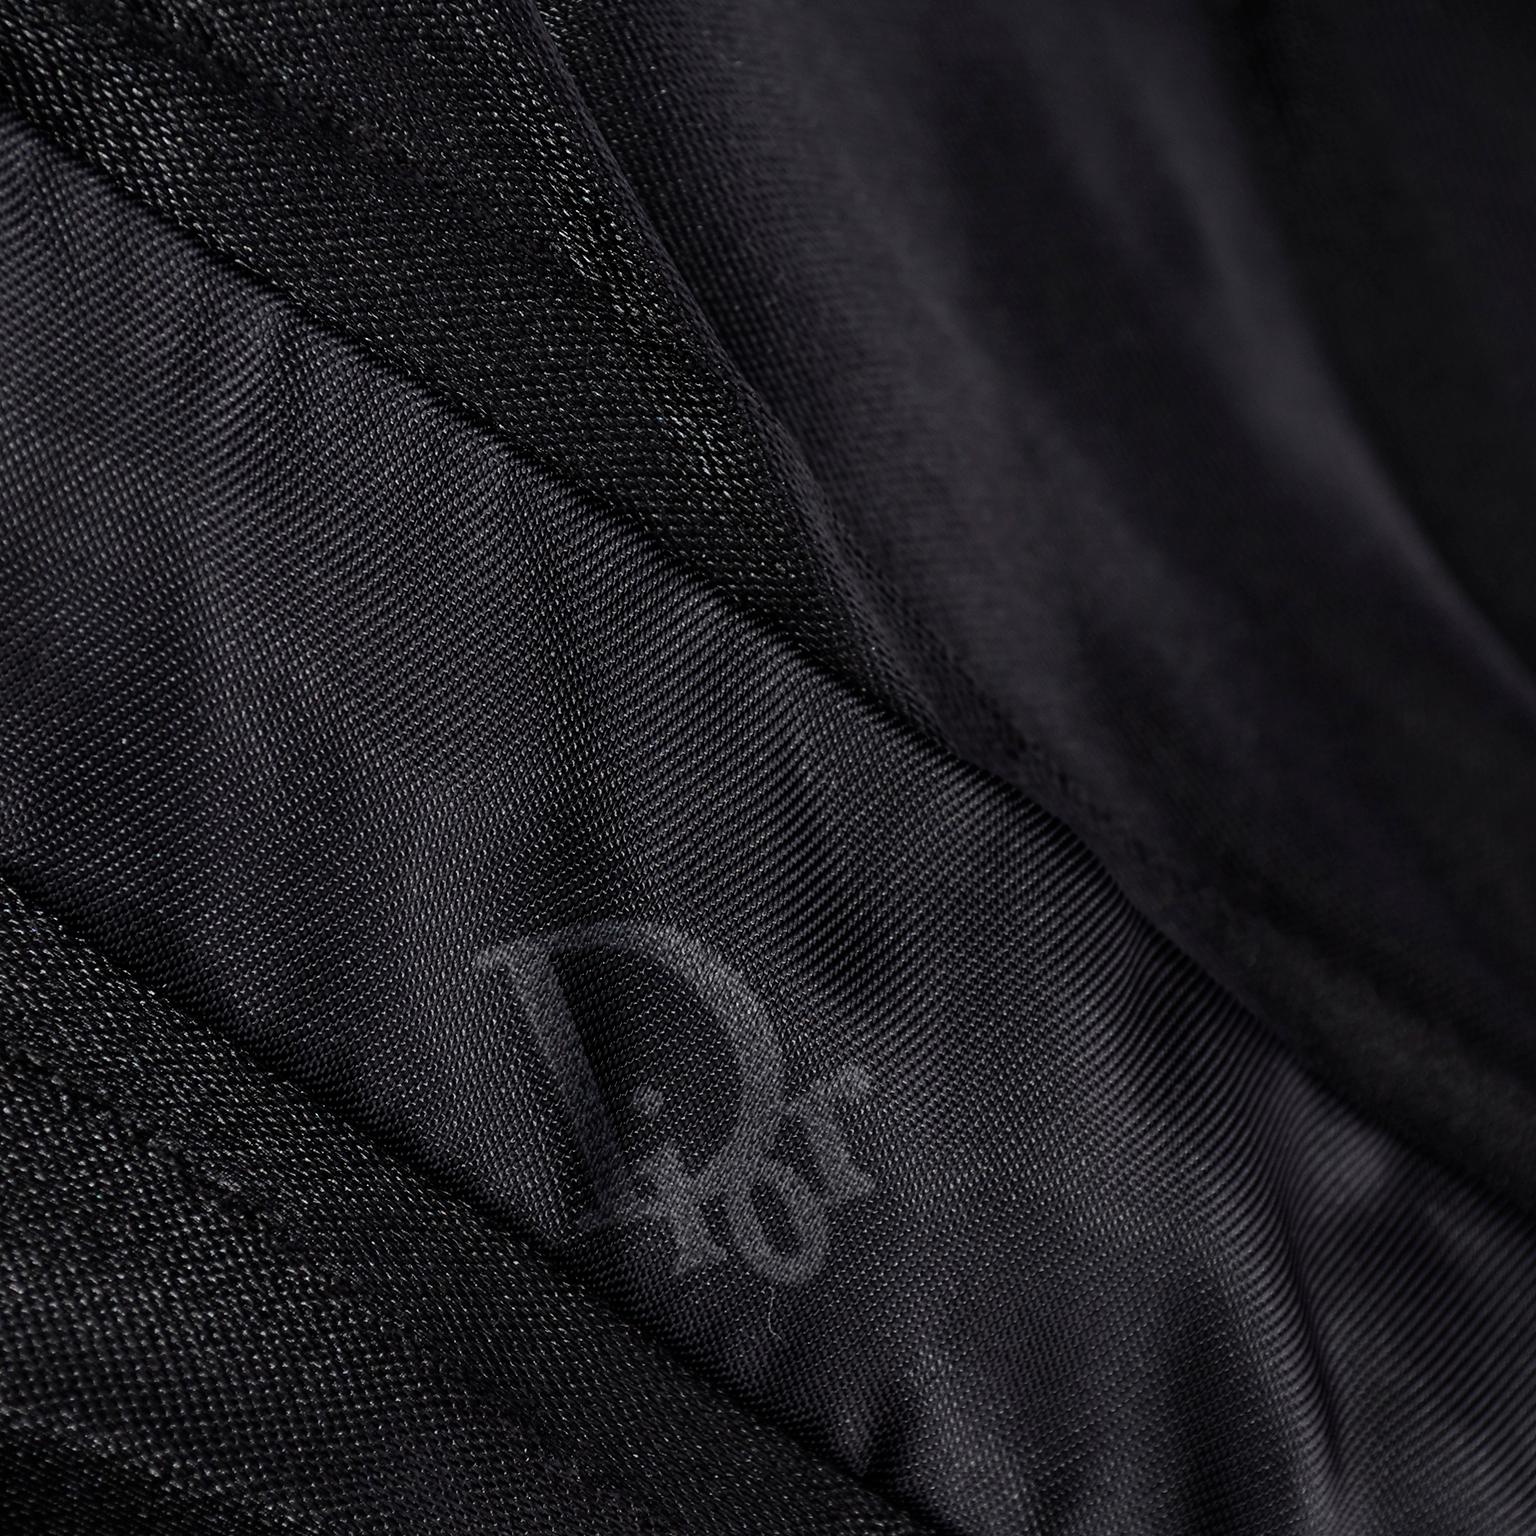 Vintage Christian Dior Dress in Black Velvet & Net W Pouf Skirt & Winged Bust 1